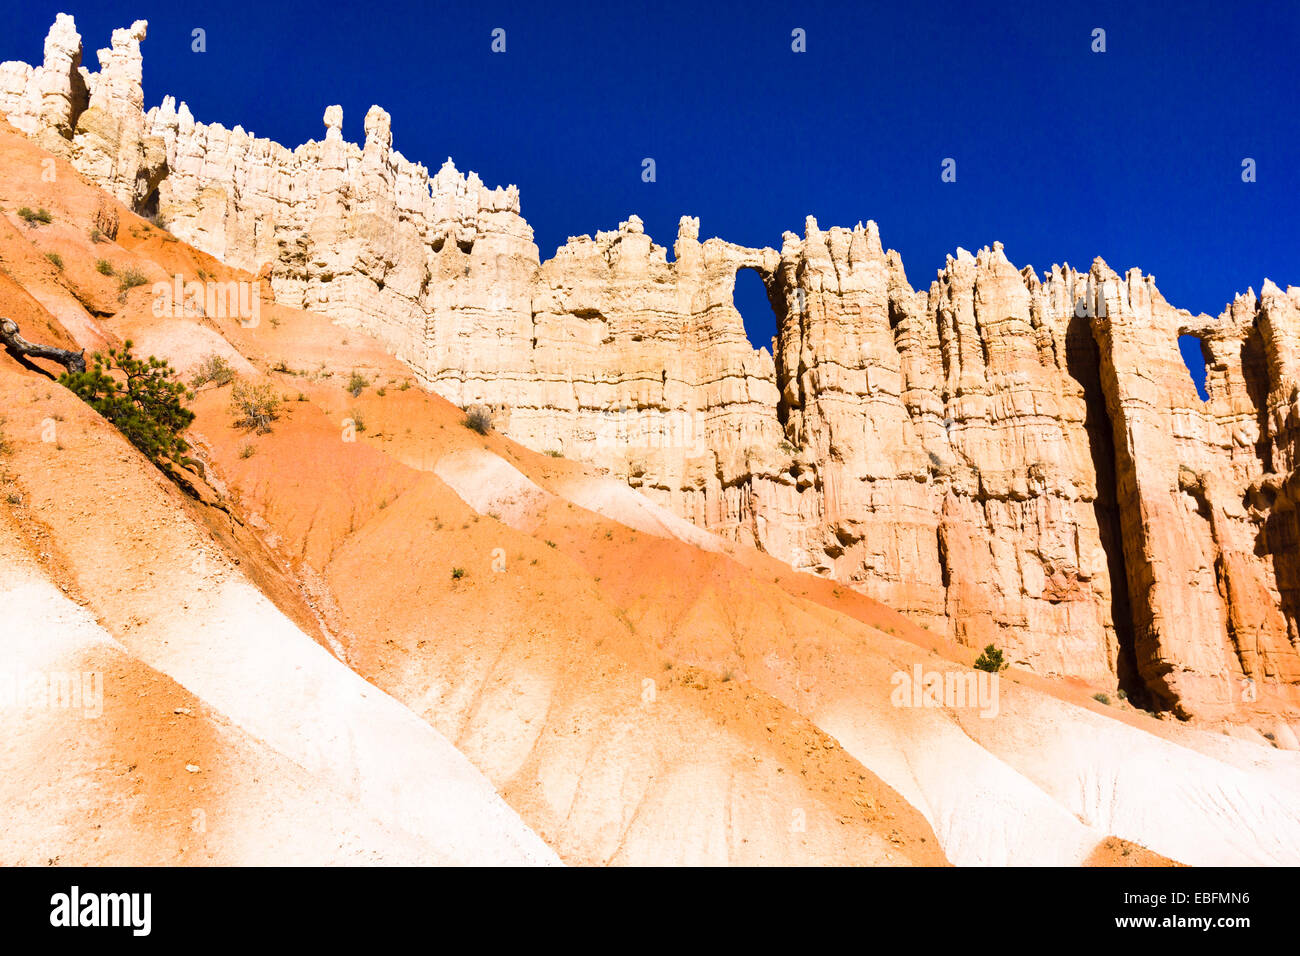 Mur de fenêtres. Bryce Canyon National Park, Utah, USA. Banque D'Images